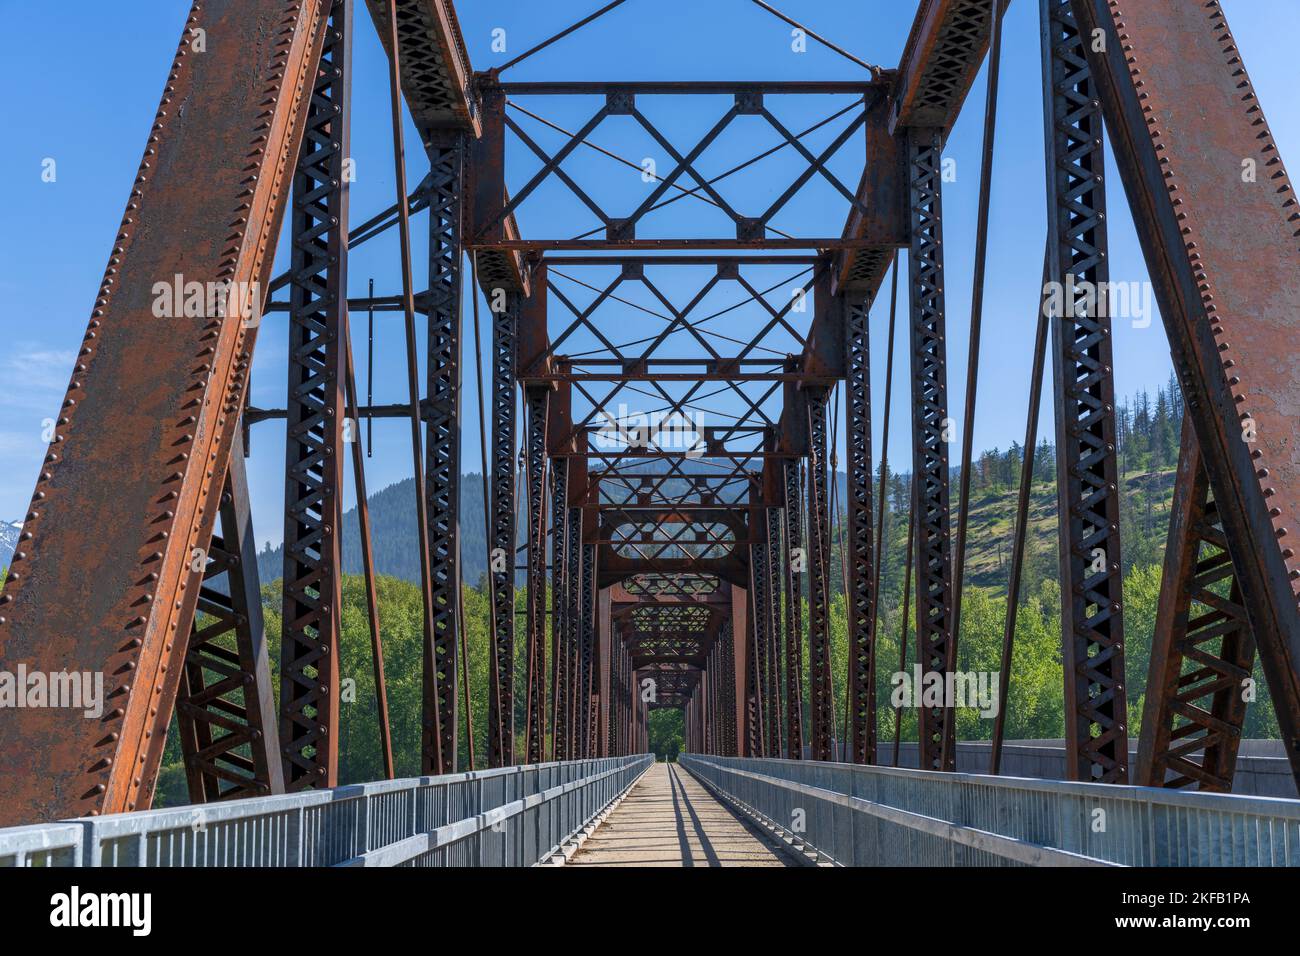 Construit il y a plus d'un siècle en 1920, l'ancien pont ferroviaire au-dessus de la rivière Clark Fork dans le comté de Bonner, Idaho, fait 996 pieds de long, un exploit d'ingénierie. Banque D'Images